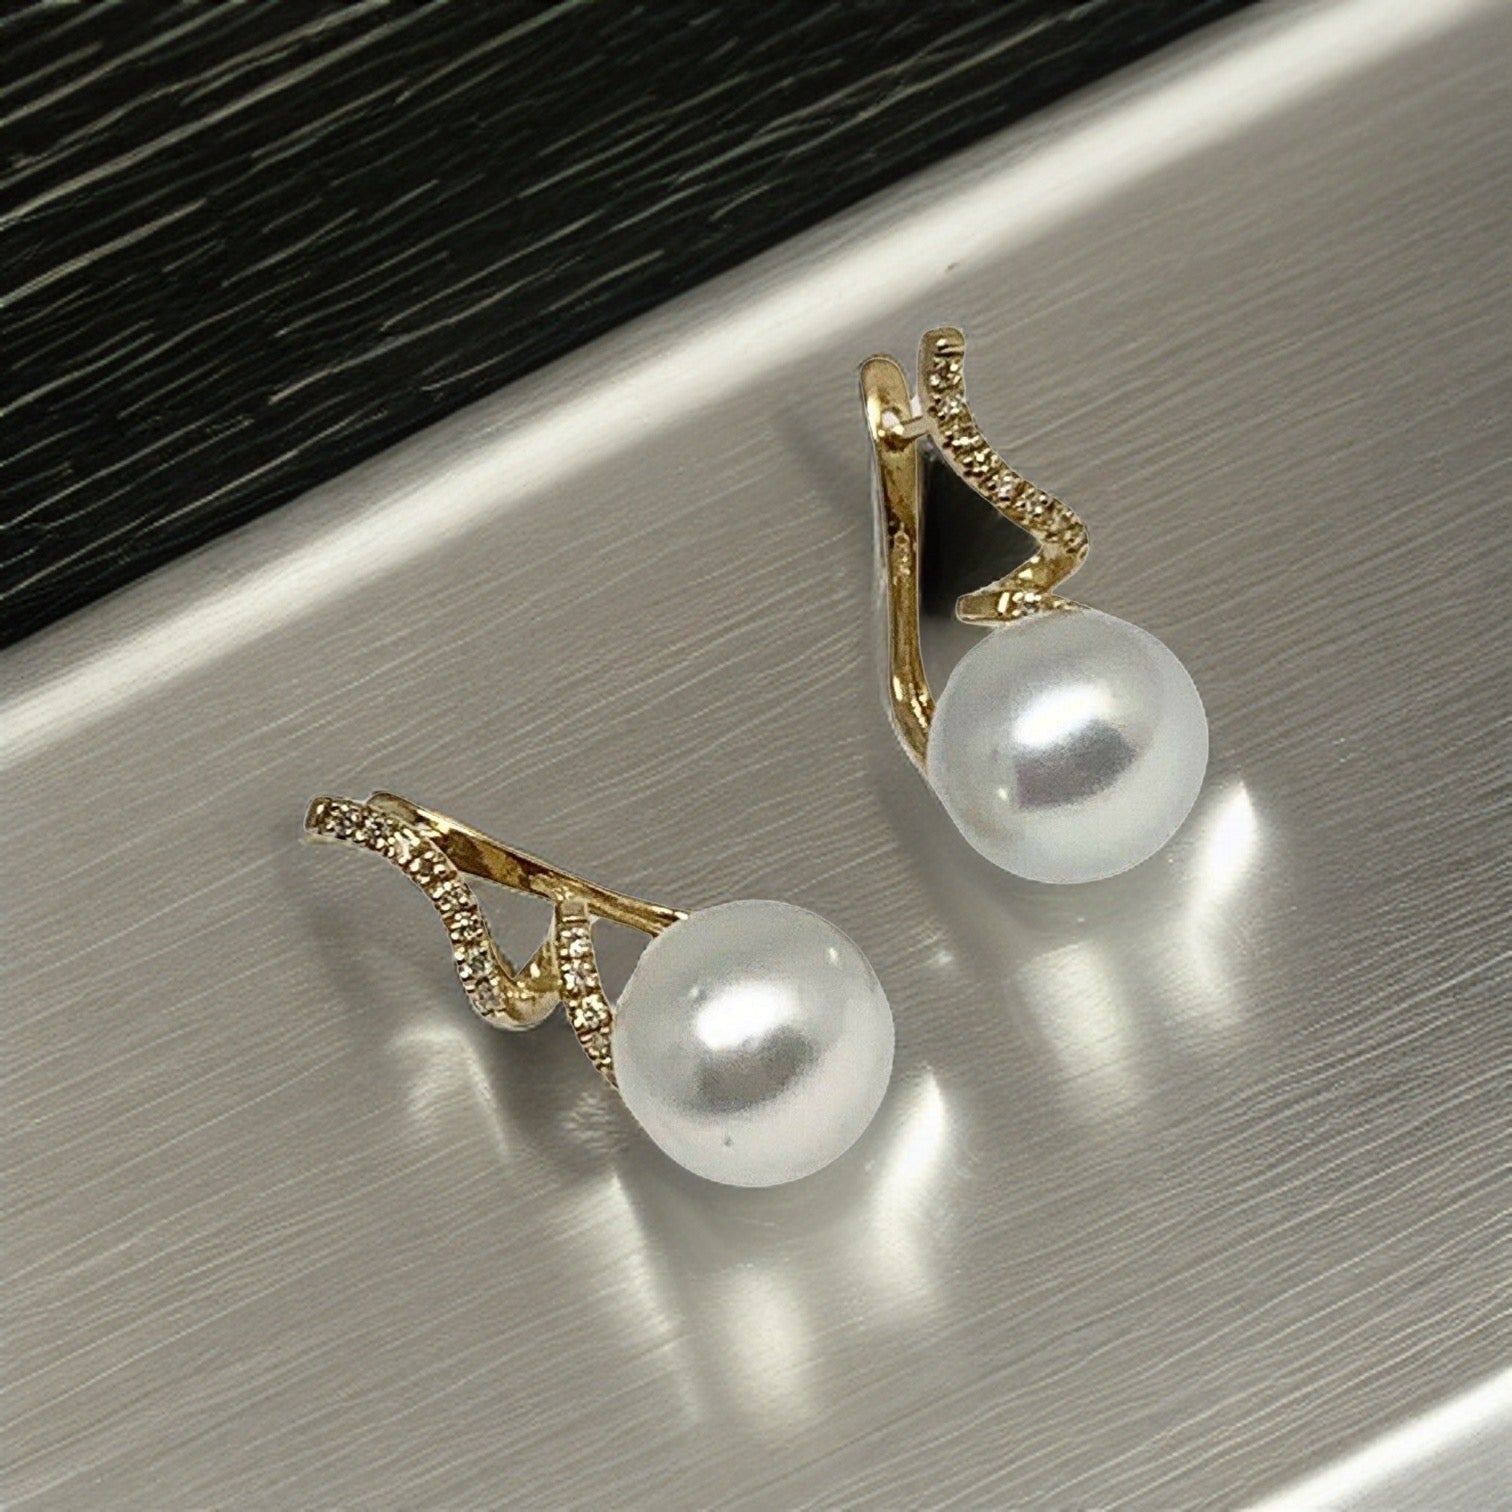 Diamond South Sea Pearl Earrings 14k Gold 11 mm Certified $2,950 910809 - Certified Fine Jewelry